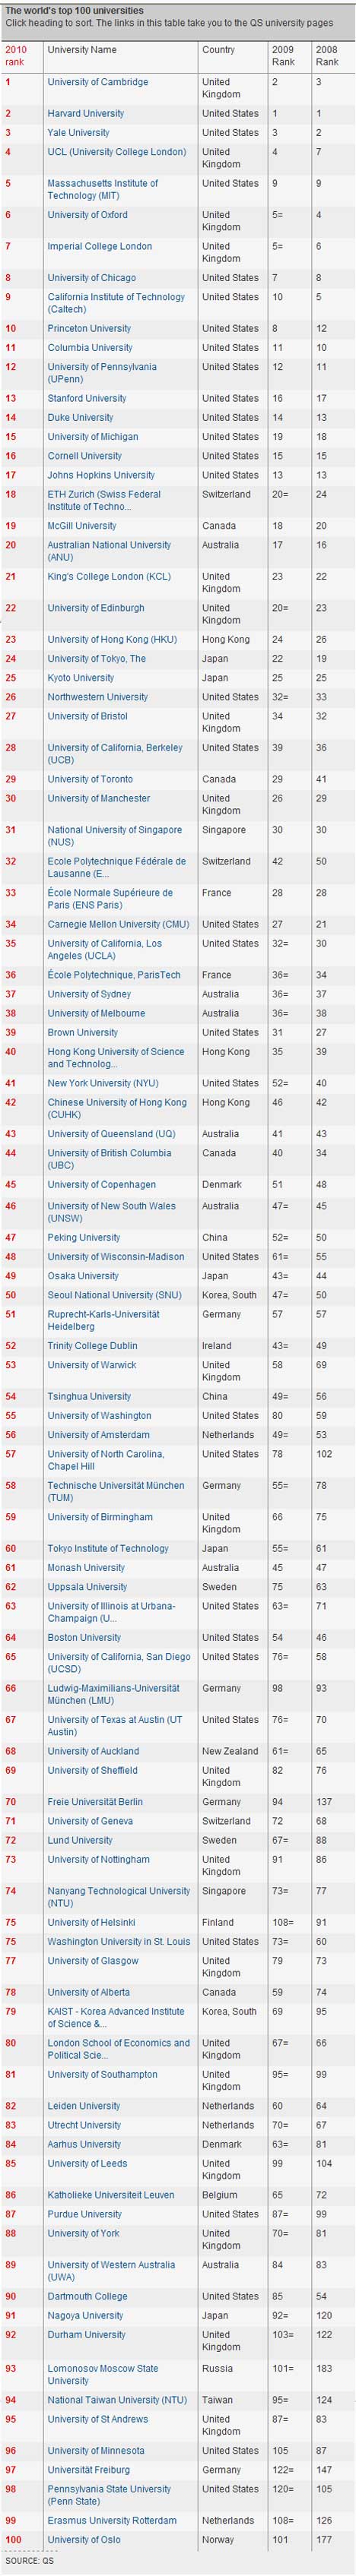 top_100_universities